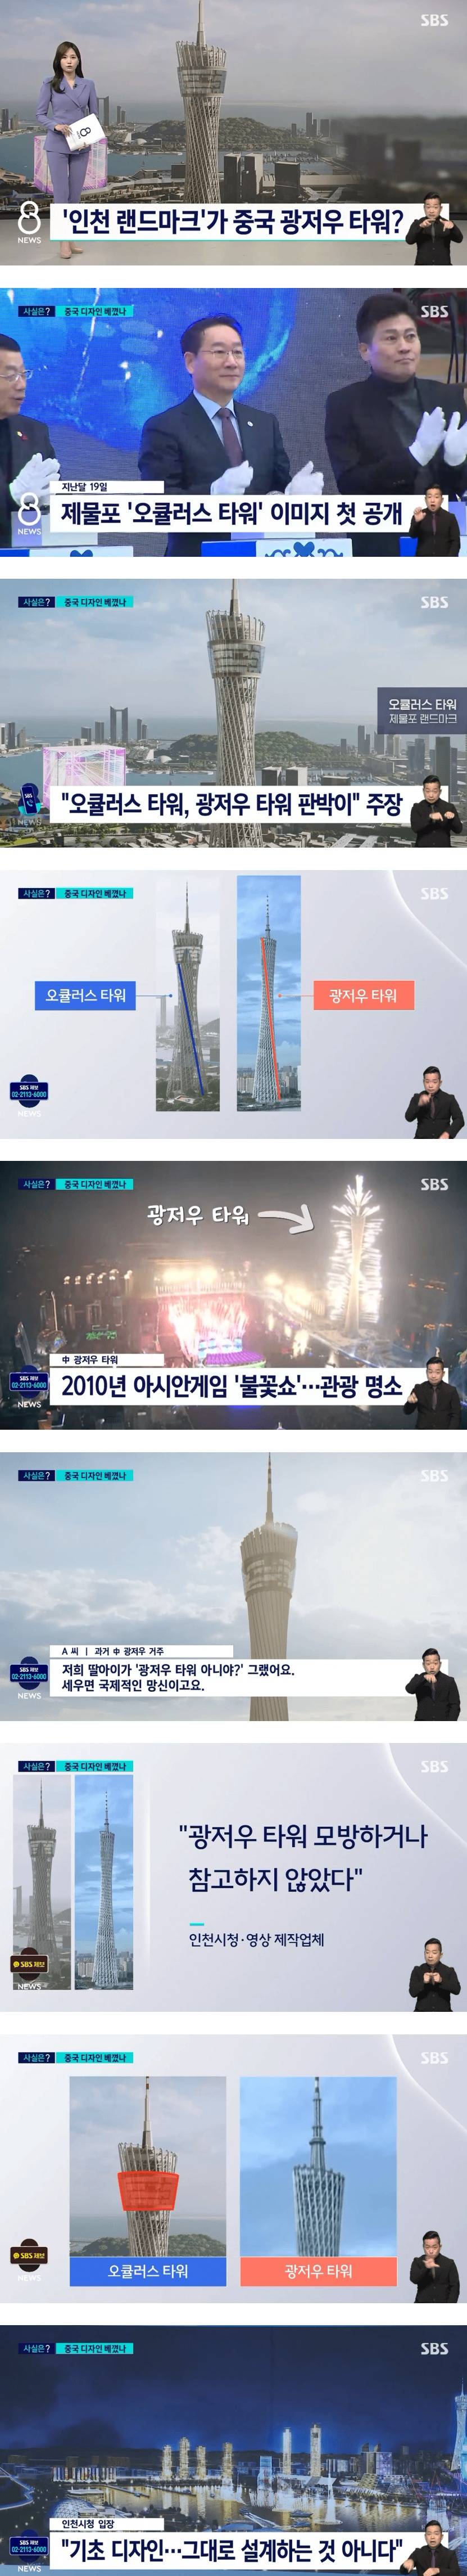 인천 랜드마크가 중국 광저우 타워?